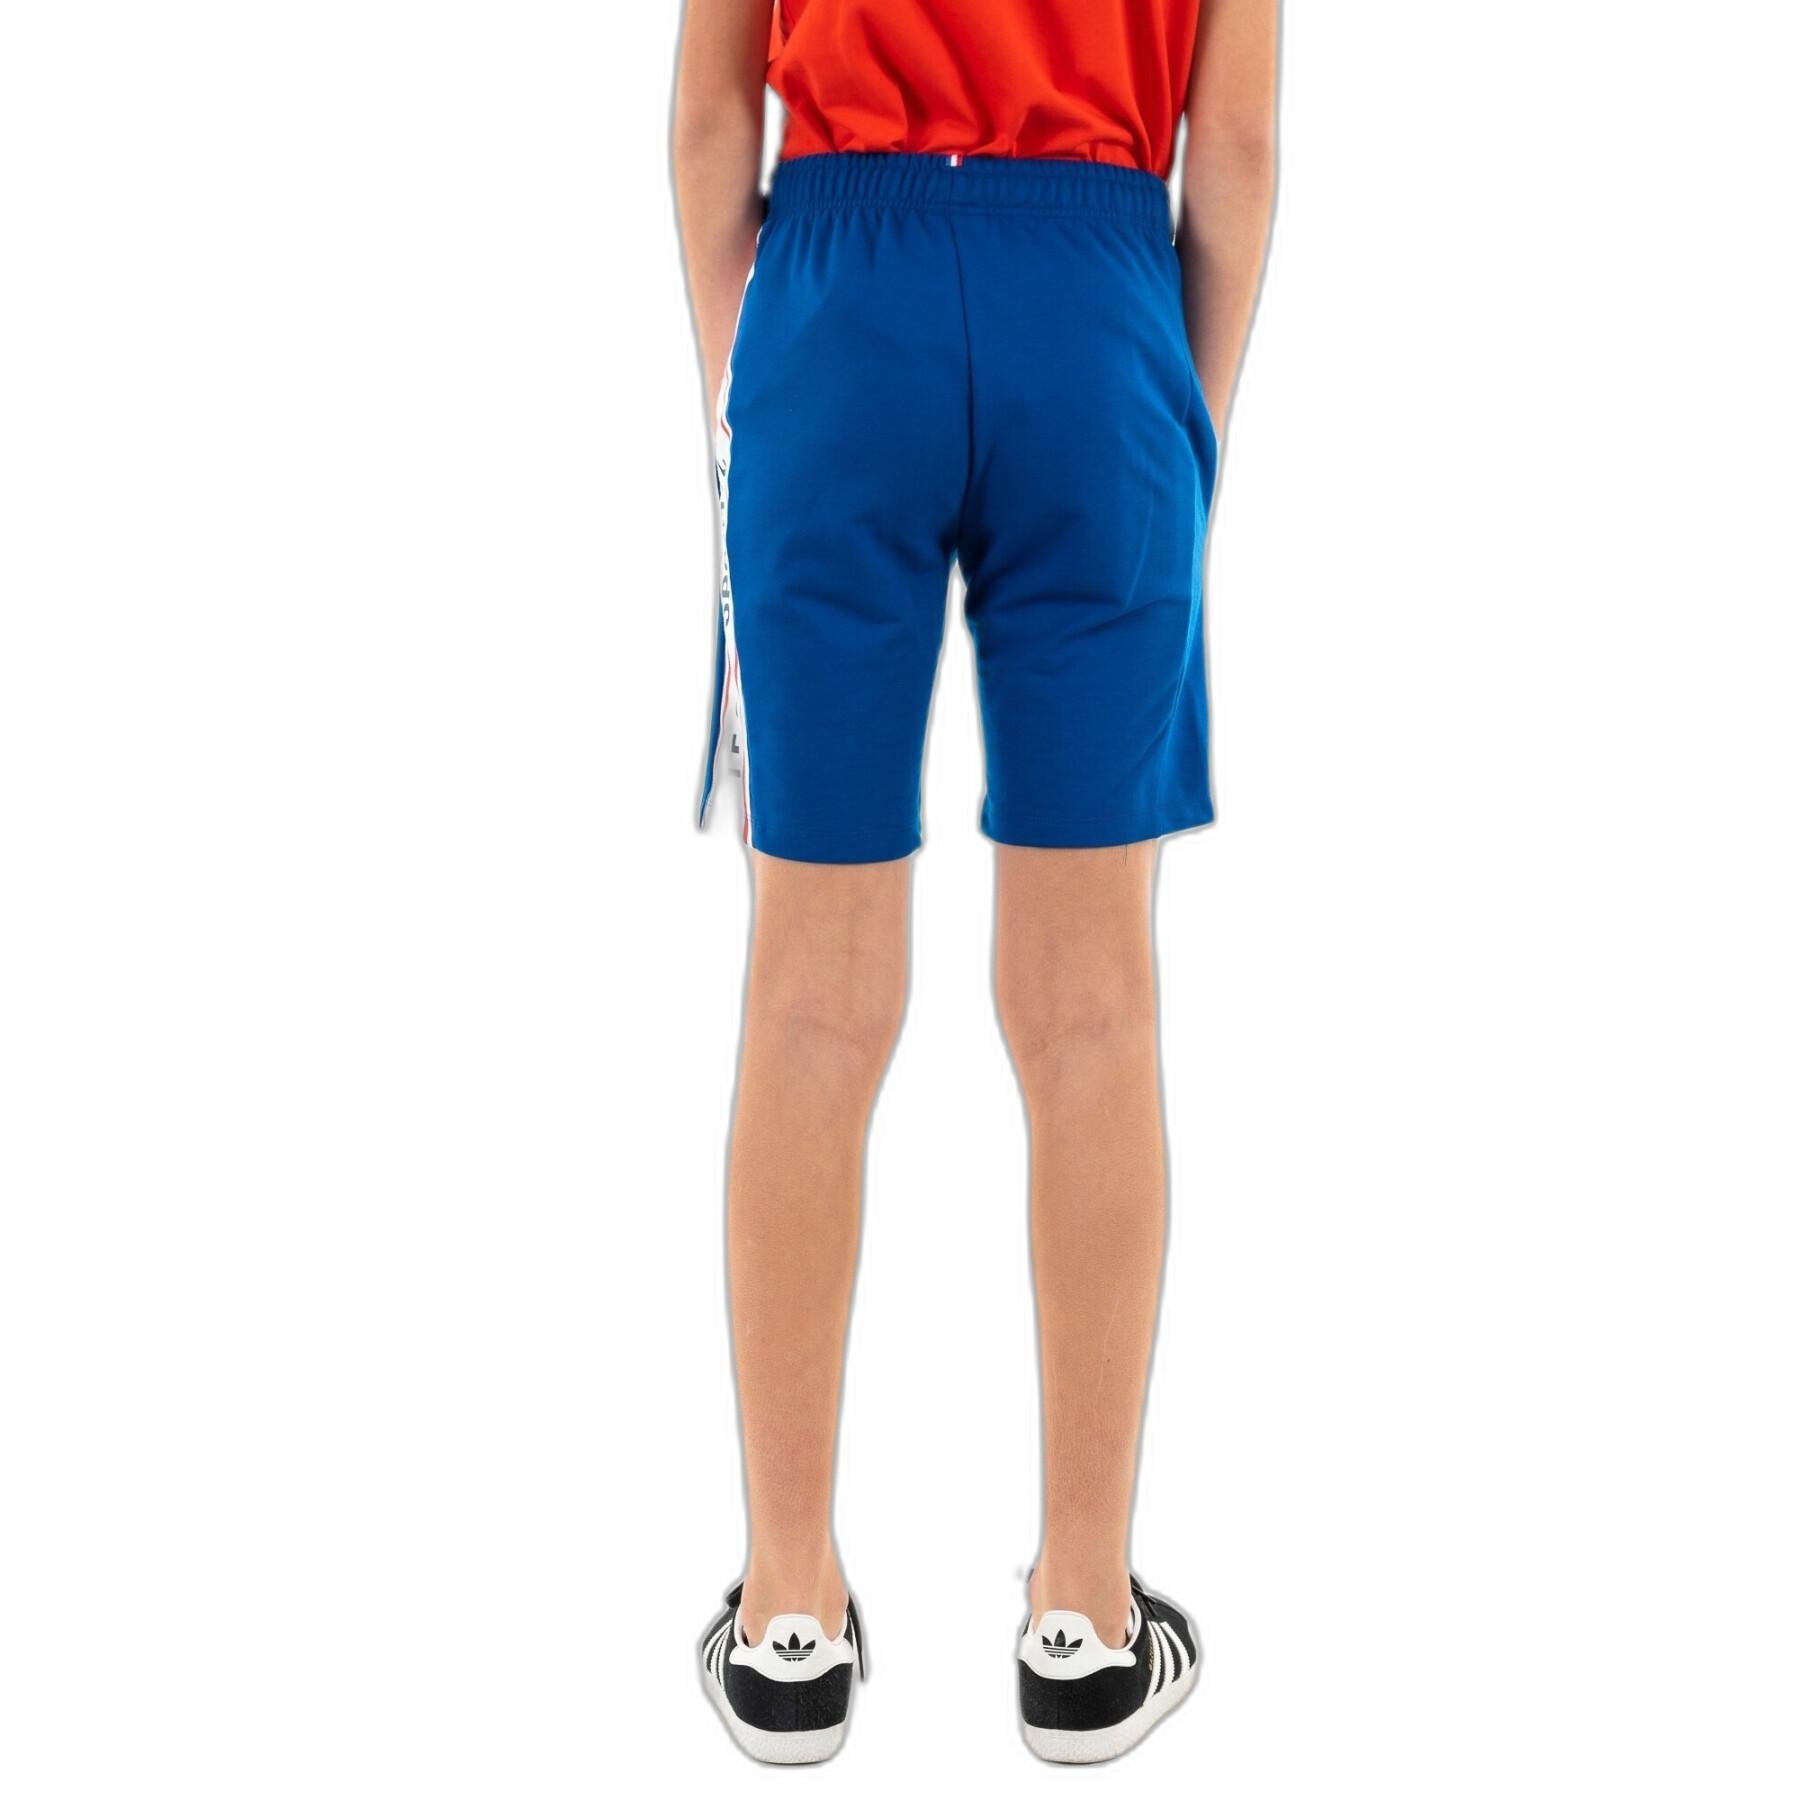 Pantaloncini per bambini Le Coq Sportif Tri N°1